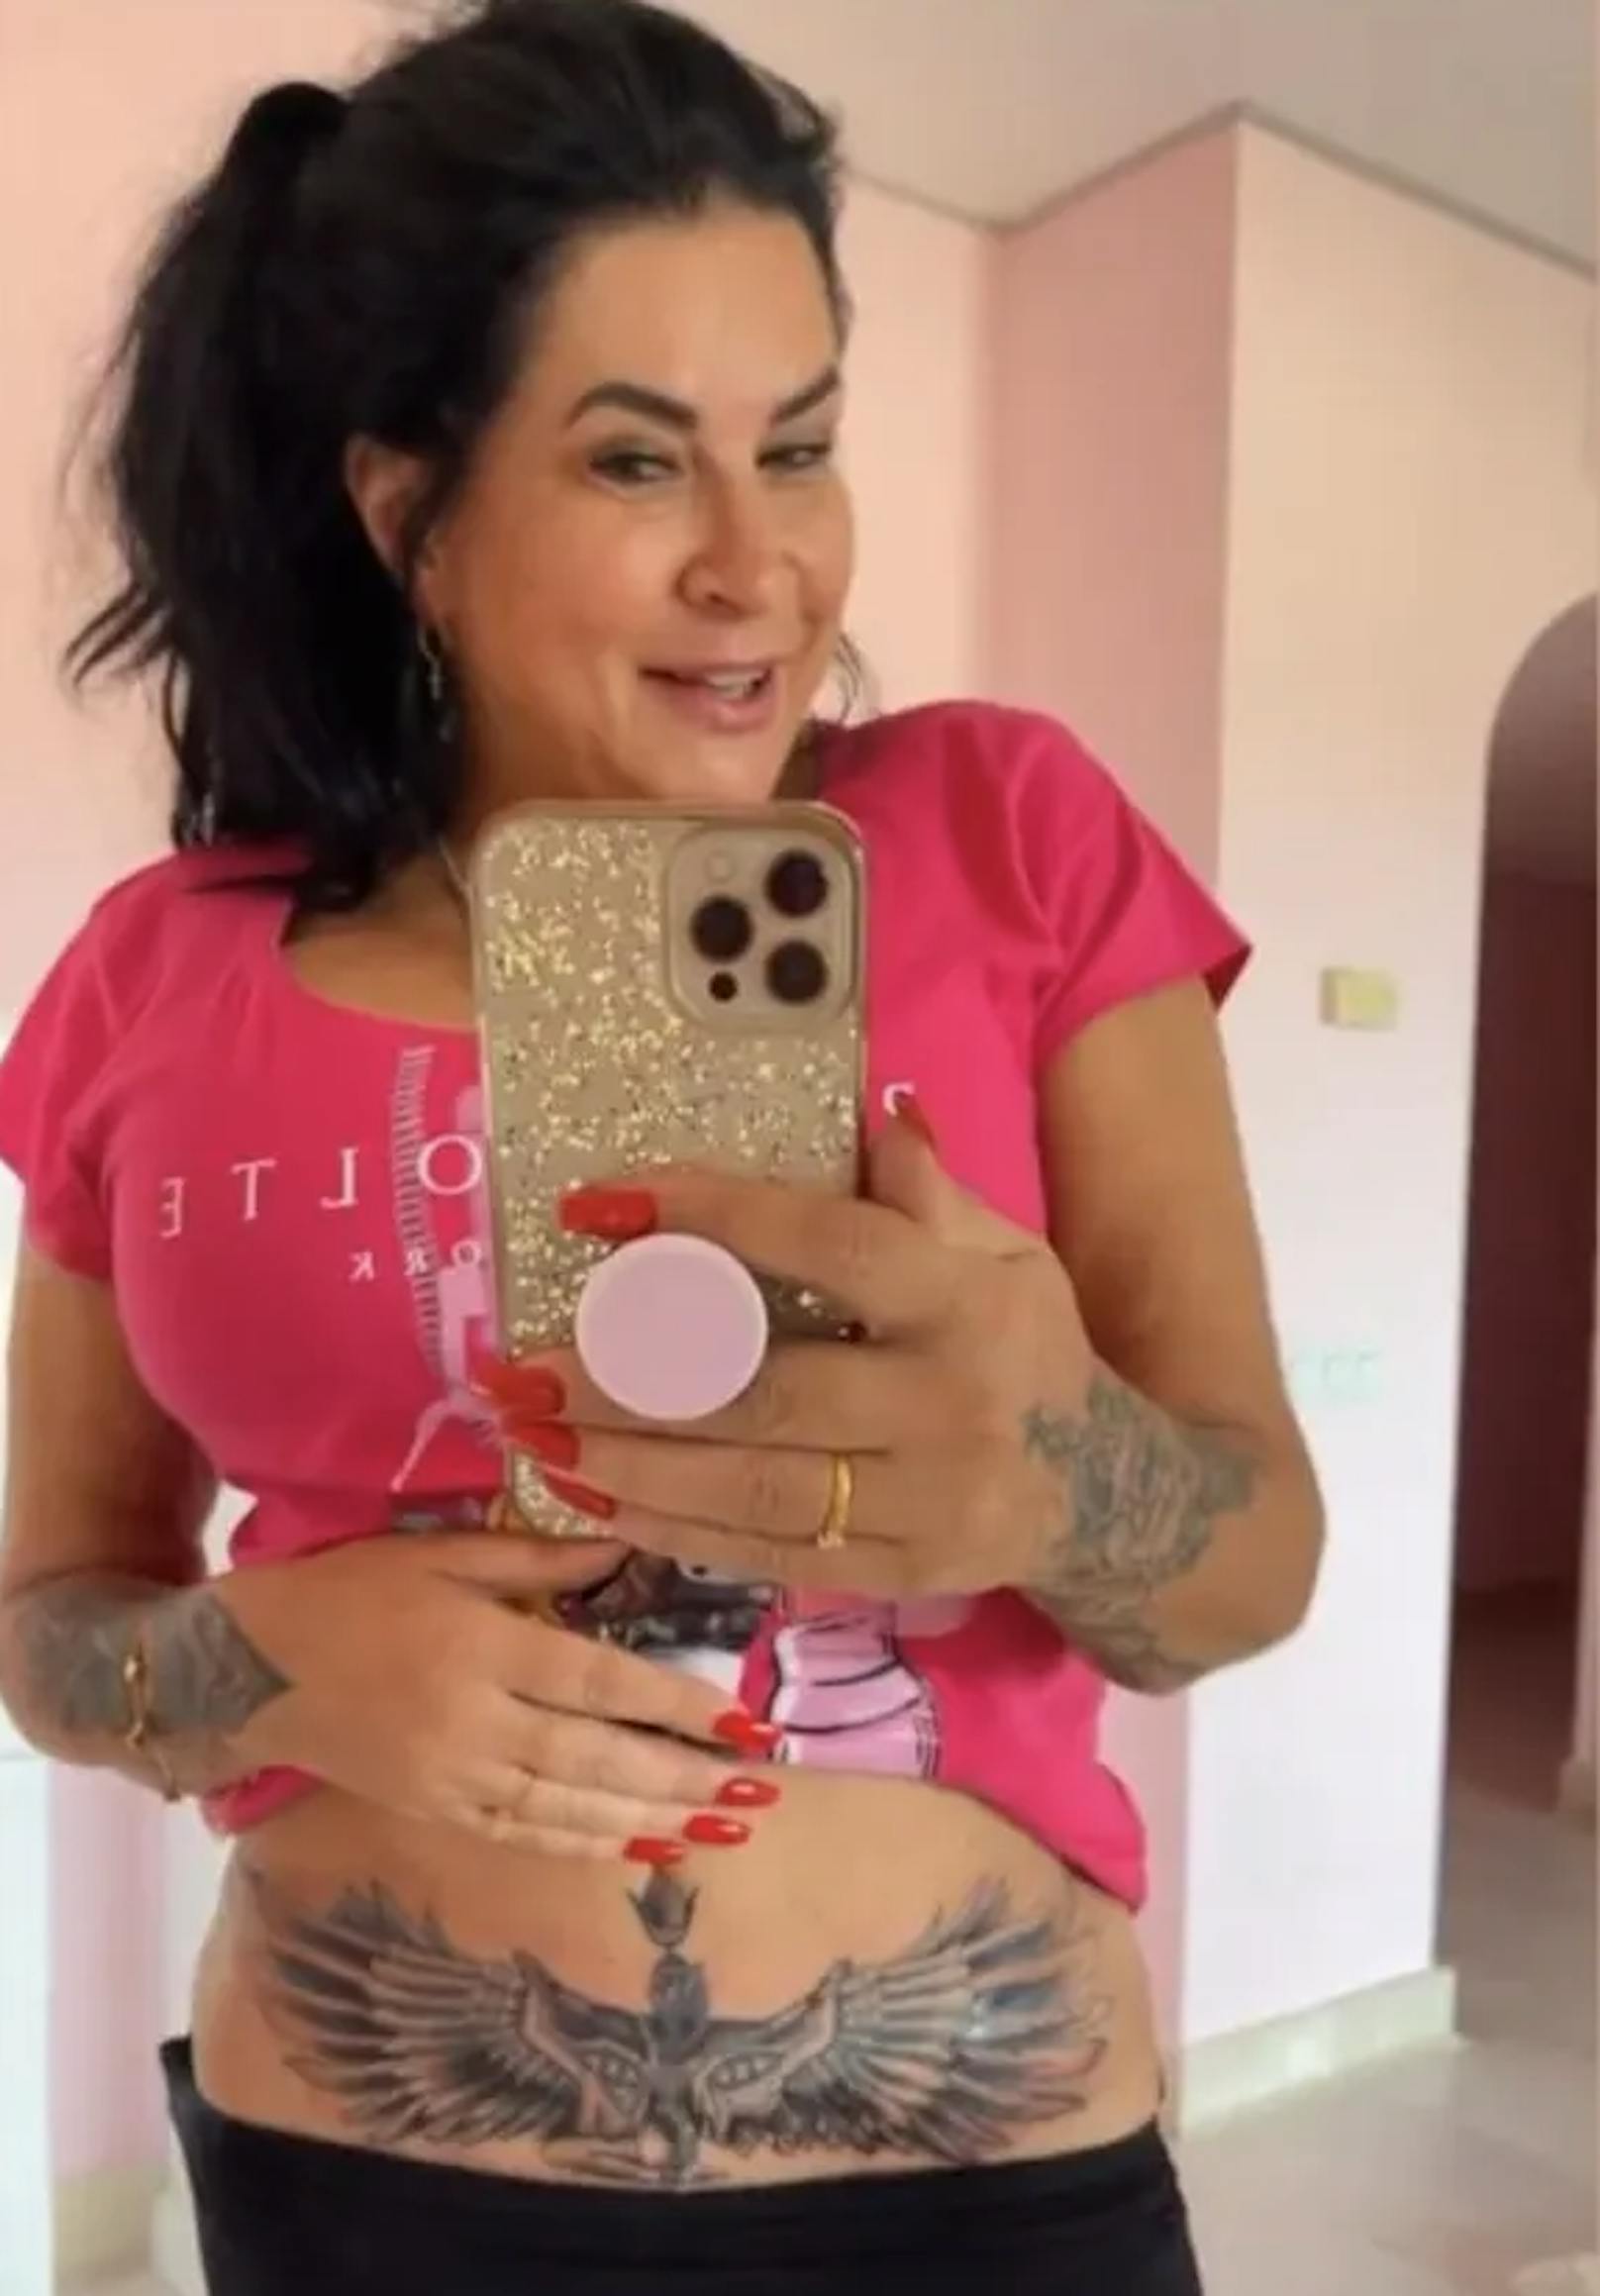 Iris Klein zeigt in ihrer Instagram-Story stolz ihr neues Bauch-Tattoo.